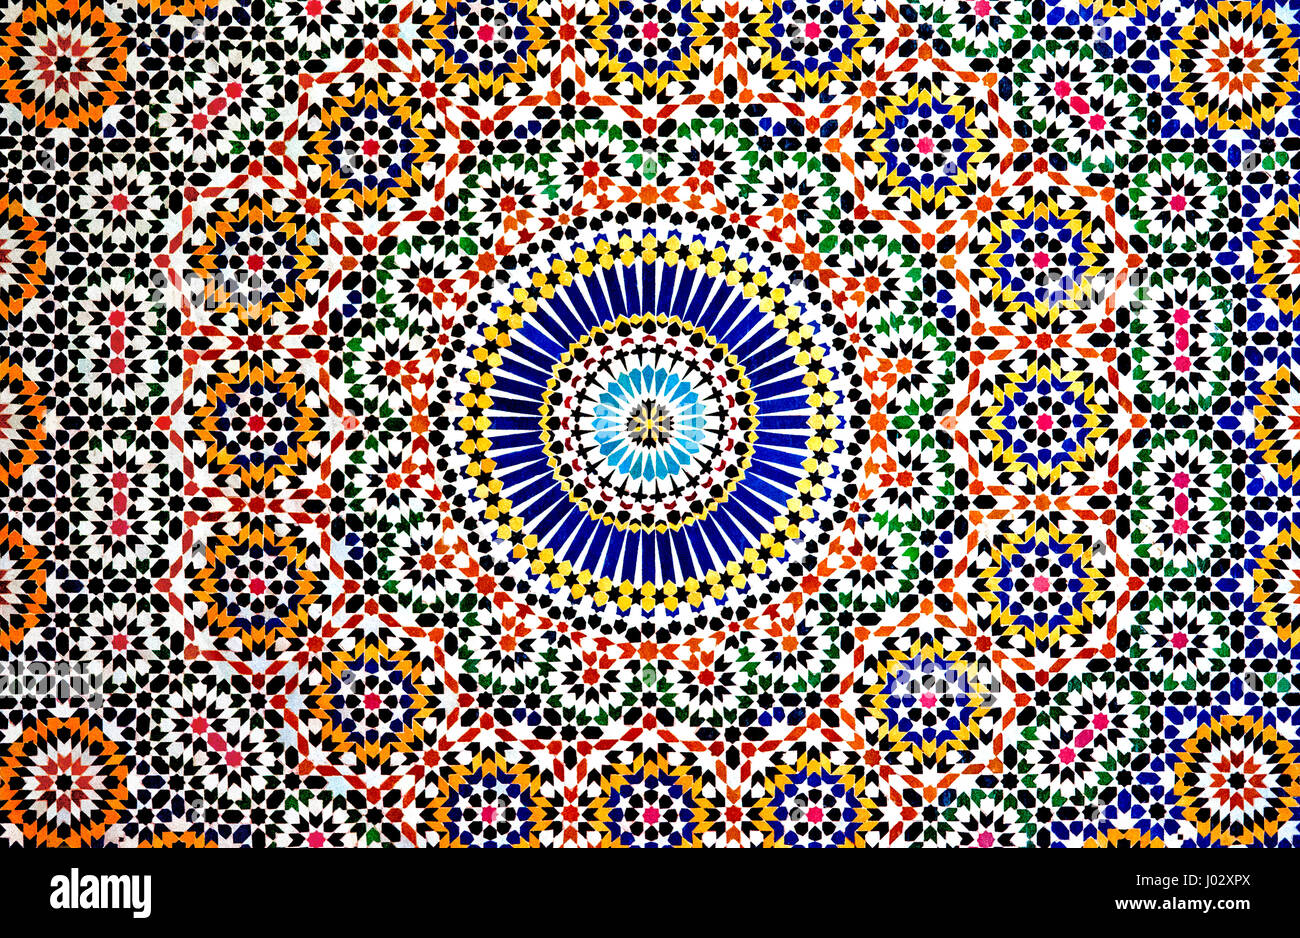 Les motifs géométriques colorés d'une mosaïque islamique décorent les murs de la Casbah Telouet, un palais en ruine dans les montagnes de l'Atlas du Maroc. Banque D'Images